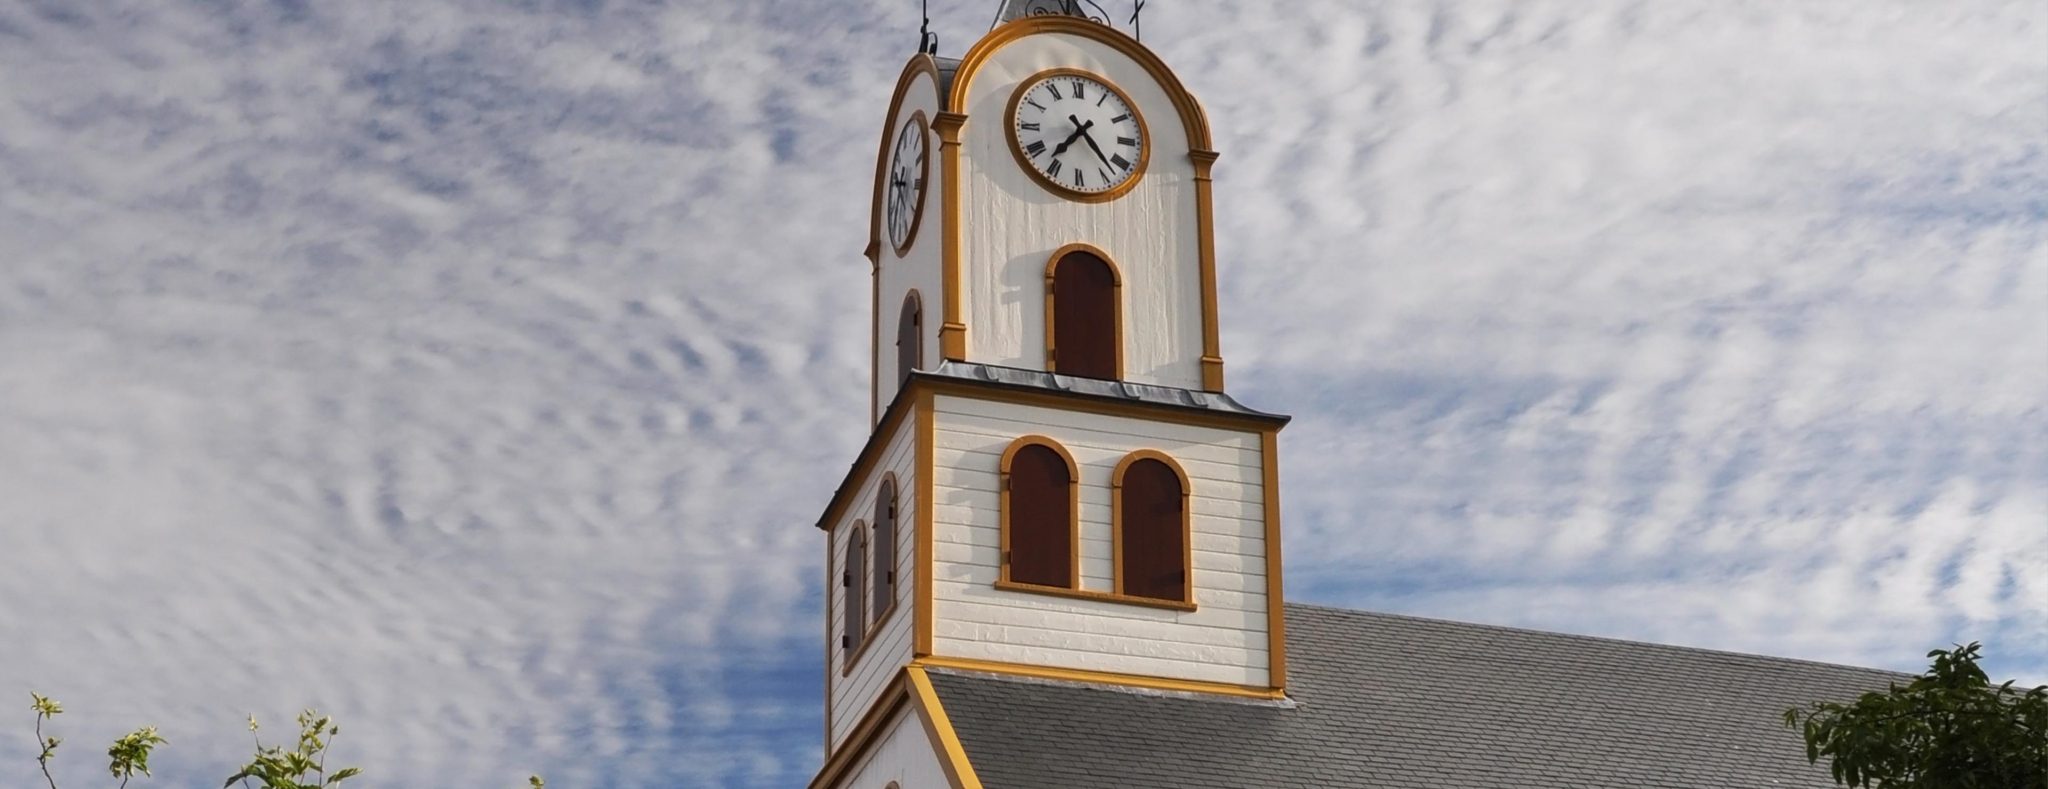 Faeroer beste reistijd kerk in Tórshavn